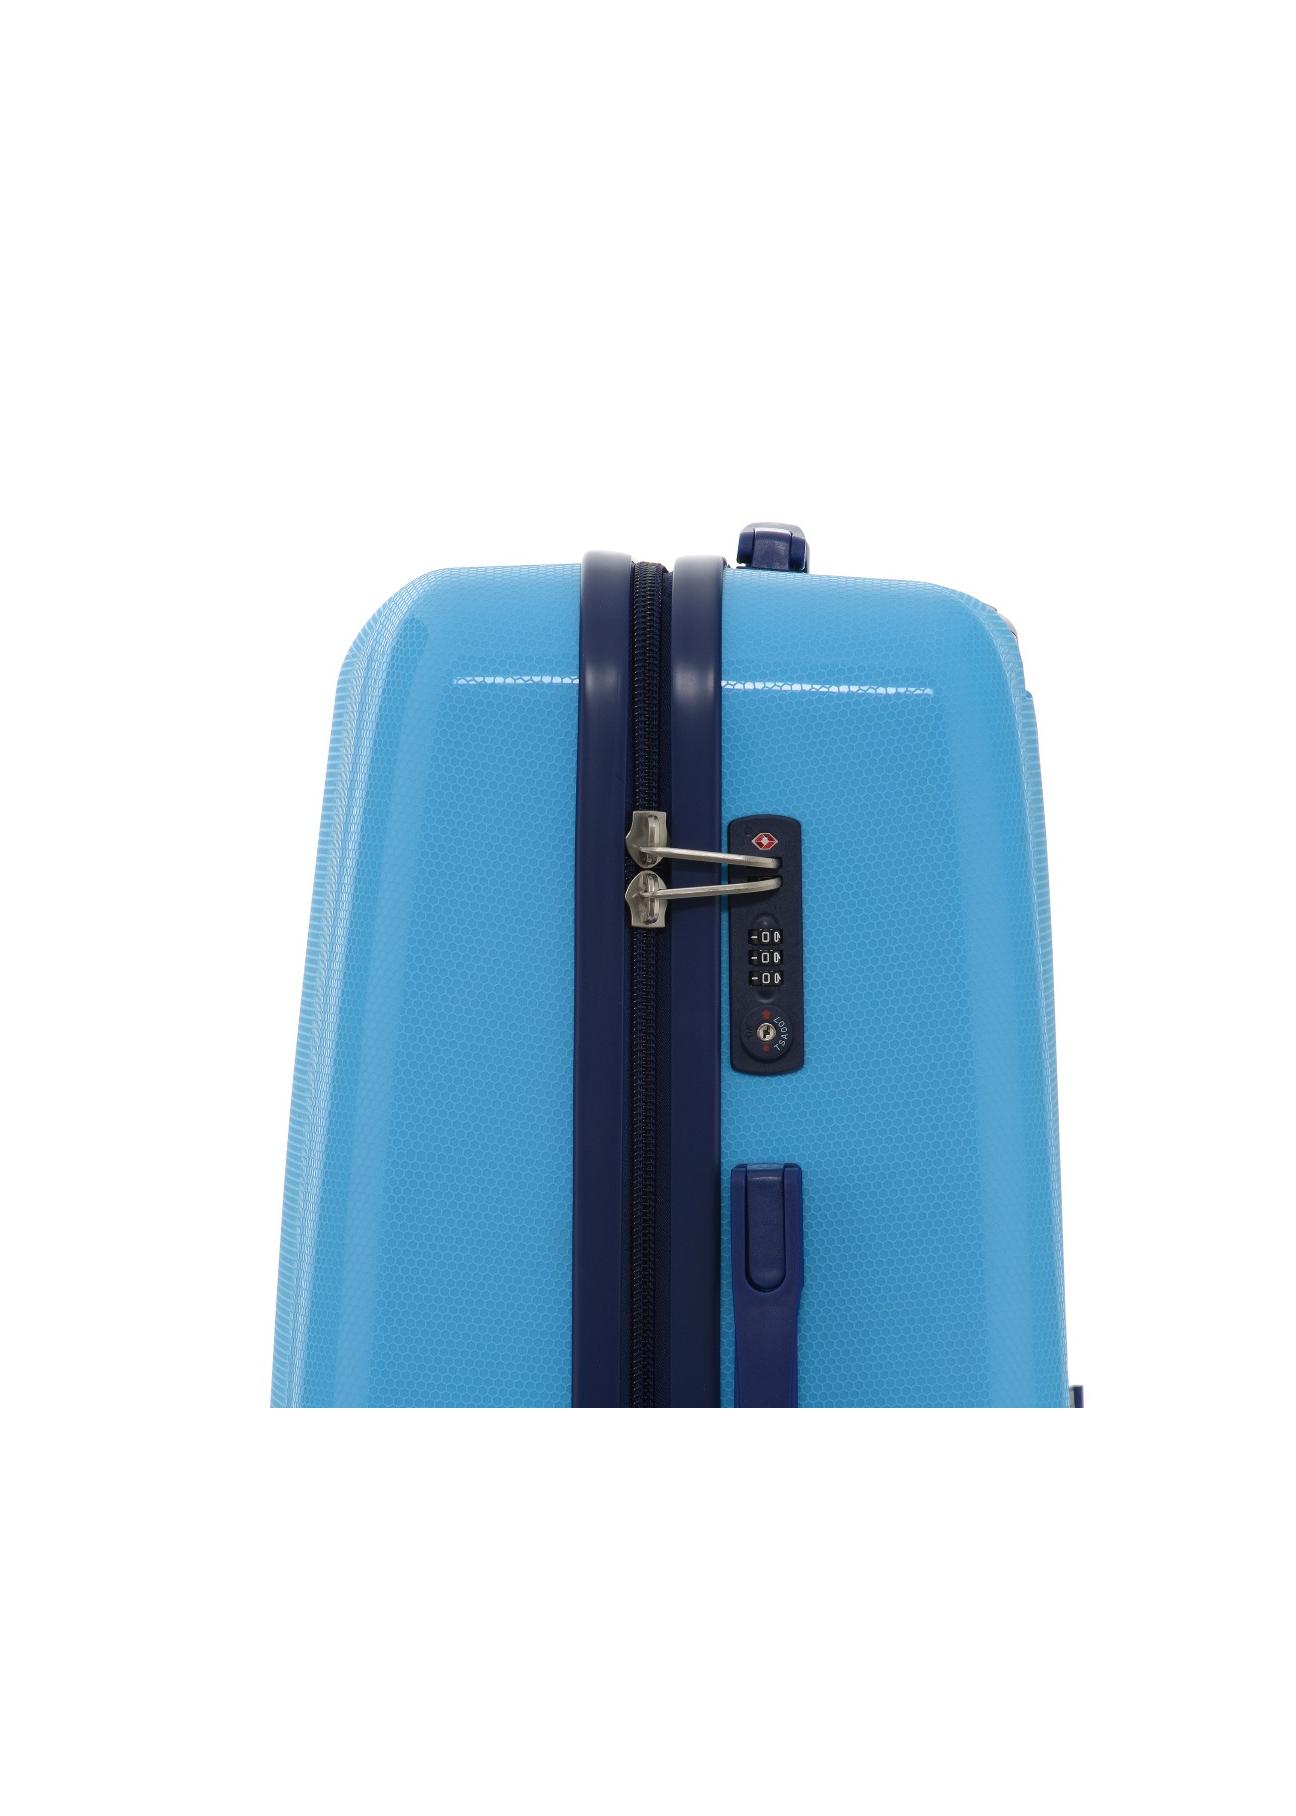 Duża walizka na kółkach WALPP-0012-61-28